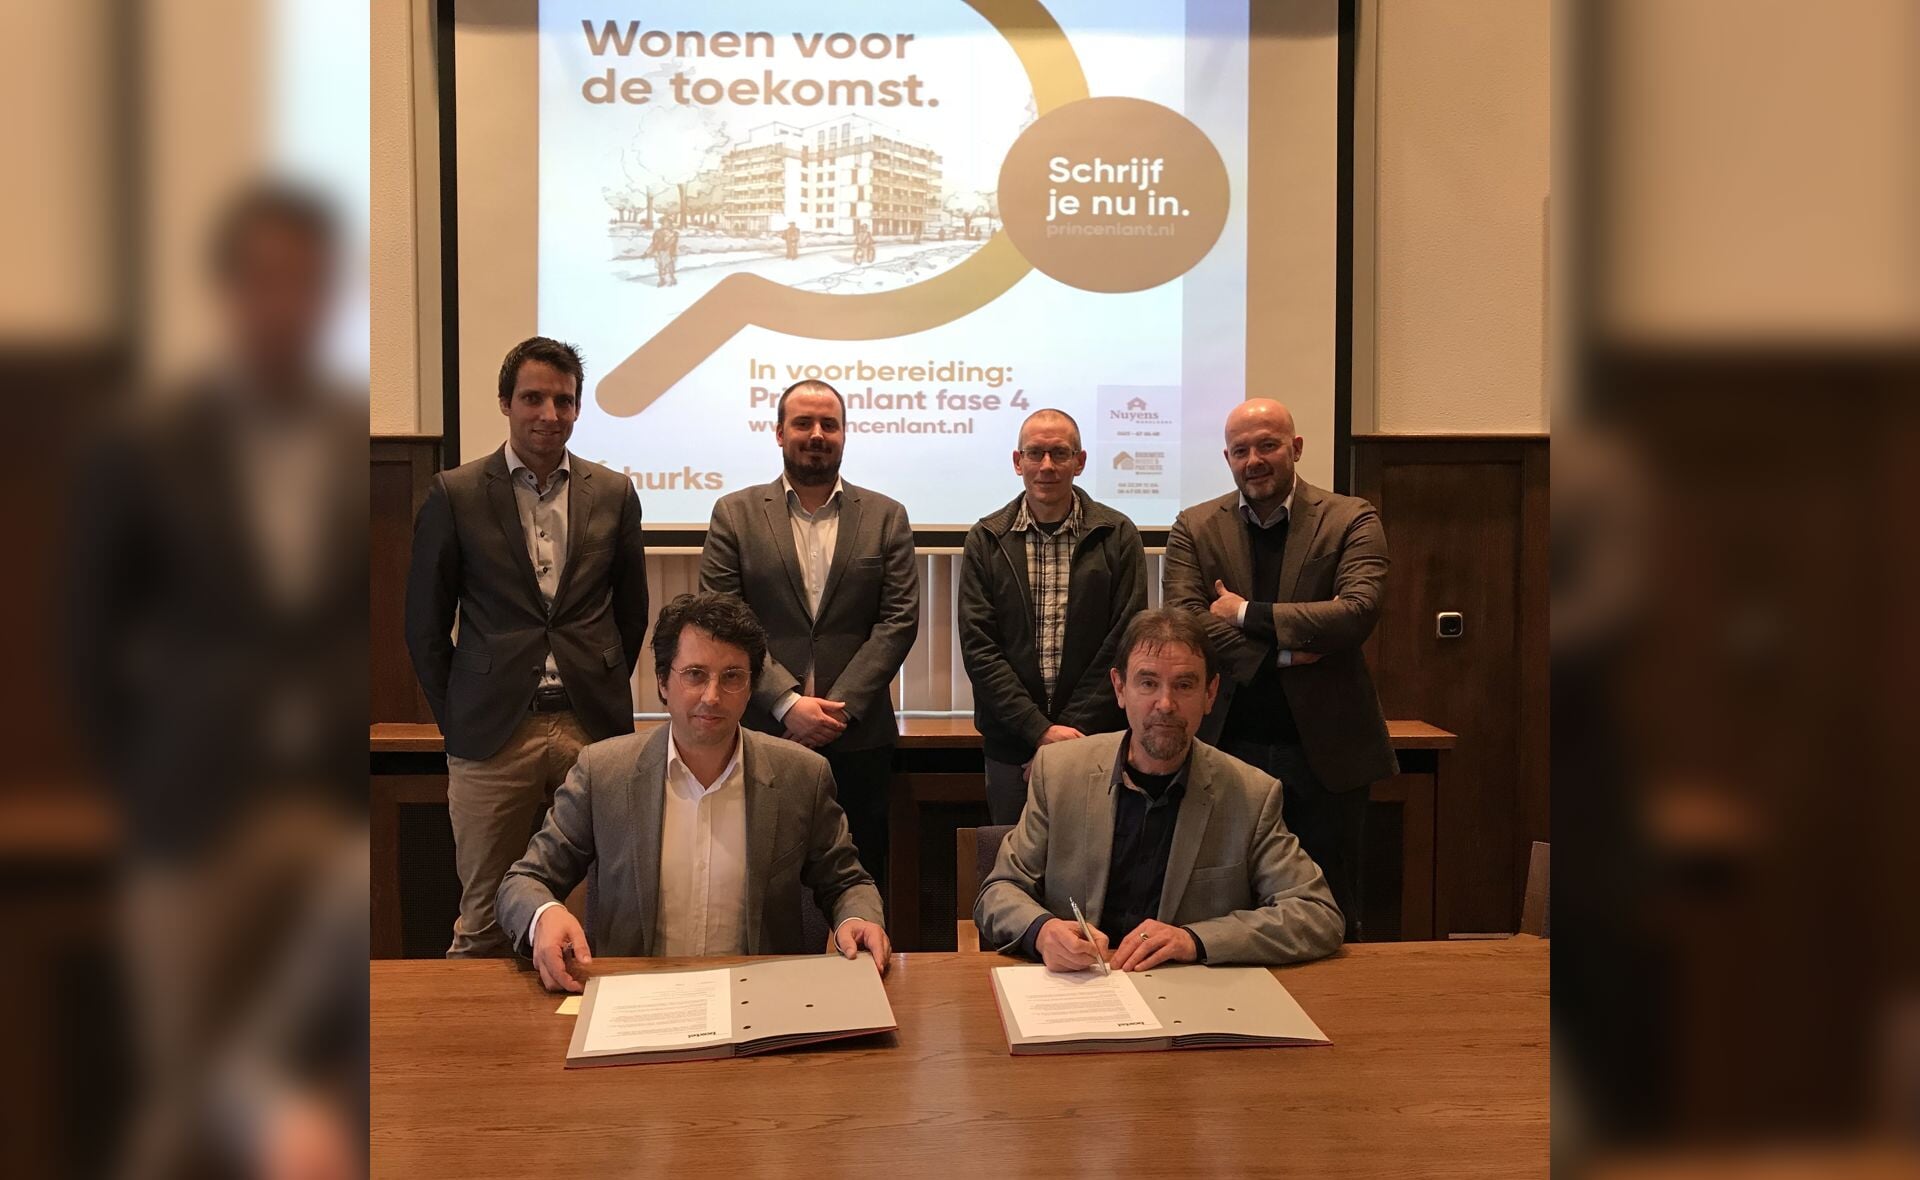 Erik Leijten en Peter van de Wiel (vooraan) zetten vrijdag hun handtekening over de overeenkomst Princenlant 4. Staand v.l.n.r. Daan Beelen (Hurks), Mark Compter (gemeente Boxtel), John Meeuwesen (gemeente Boxtel), Bart Lipsch (Hurks). (Foto:gemeente Boxtel).